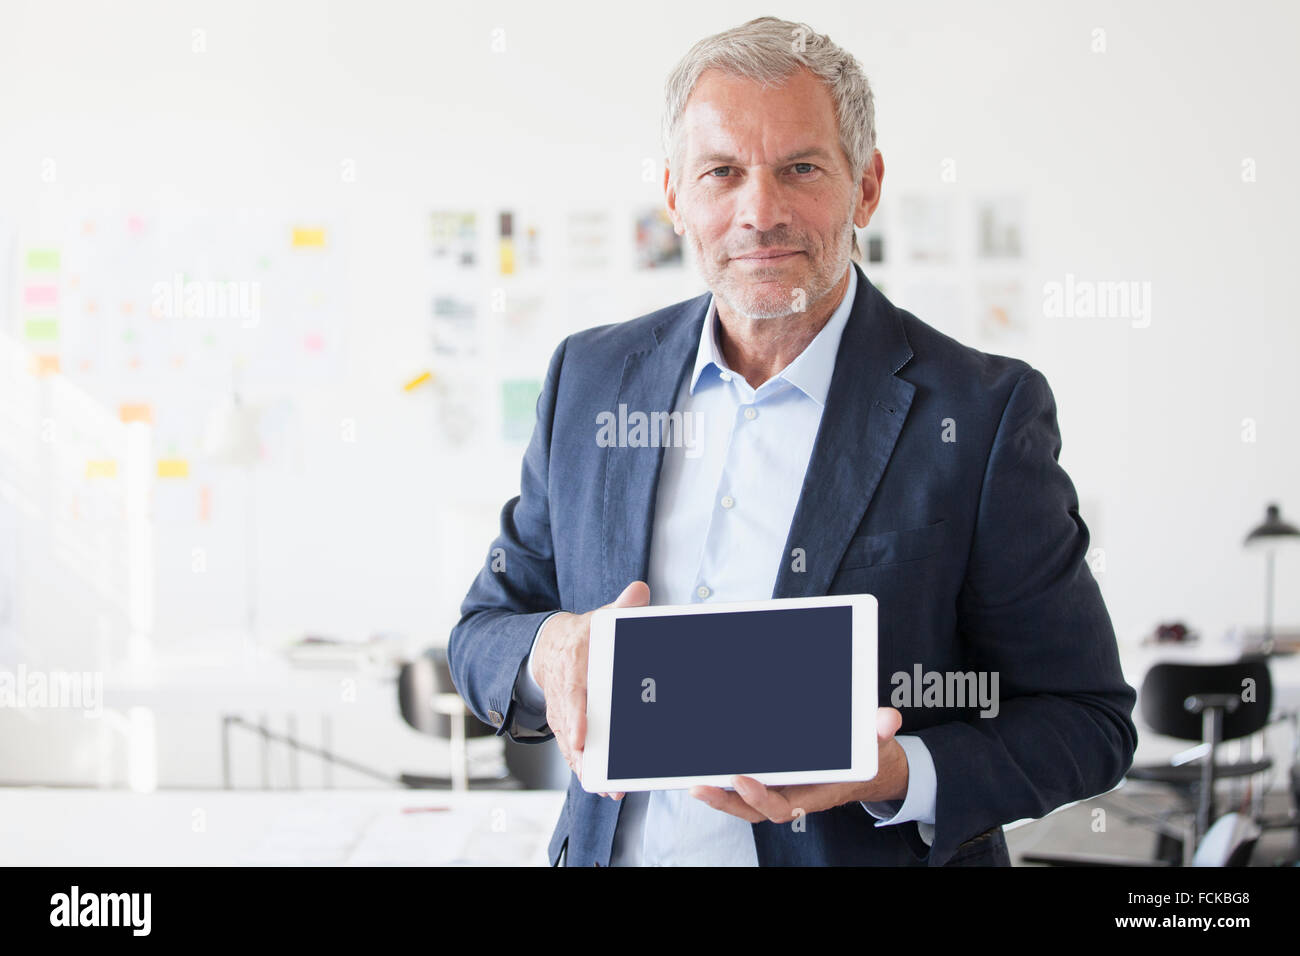 Retrato del empresario en la oficina que muestra la pantalla en blanco de tableta digital Foto de stock